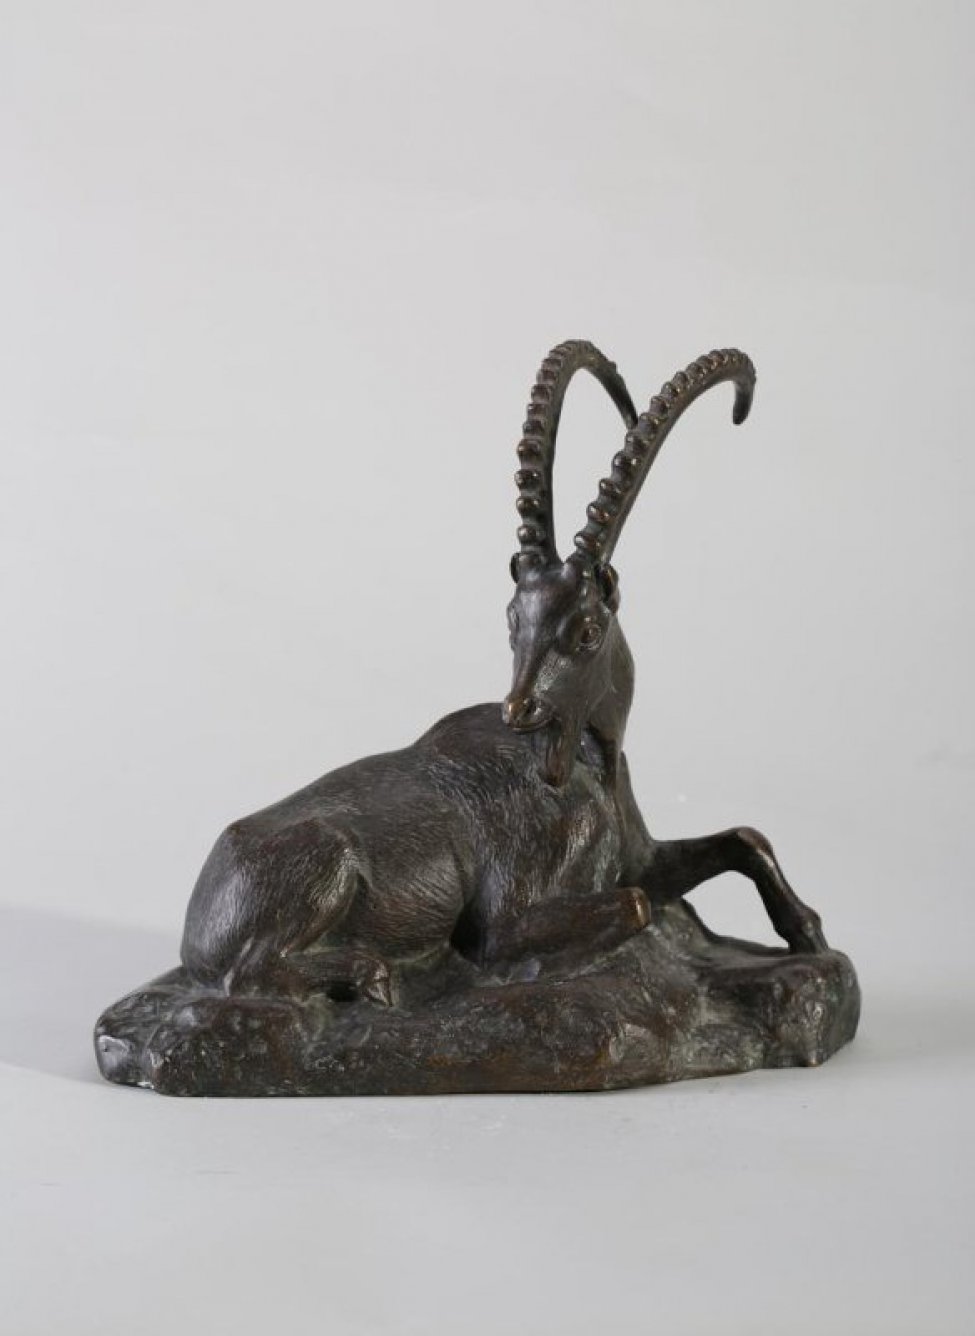 На постаменте неправильной формы изображен лежащий круторогий козел. Левая нога, согнутая в колене, выдвинута вперед.